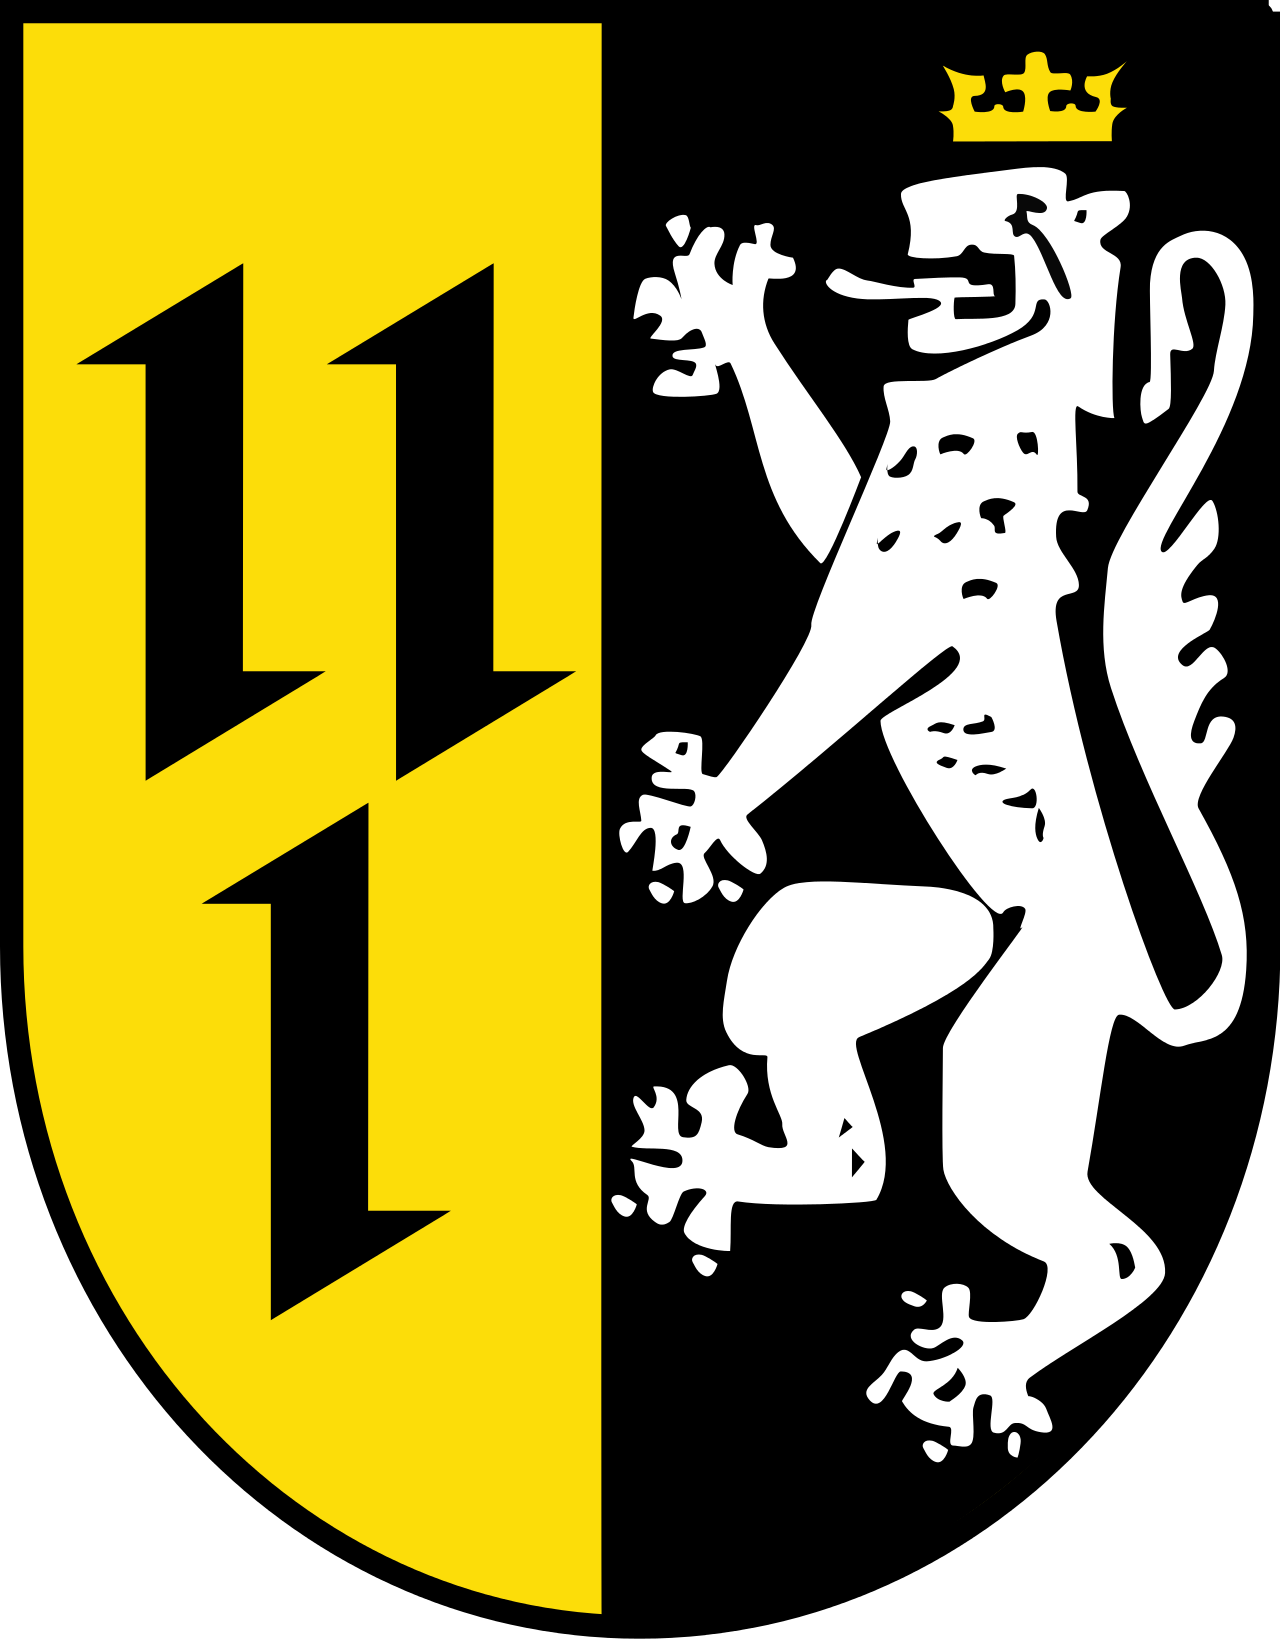 Bissendorf/Schledehausen